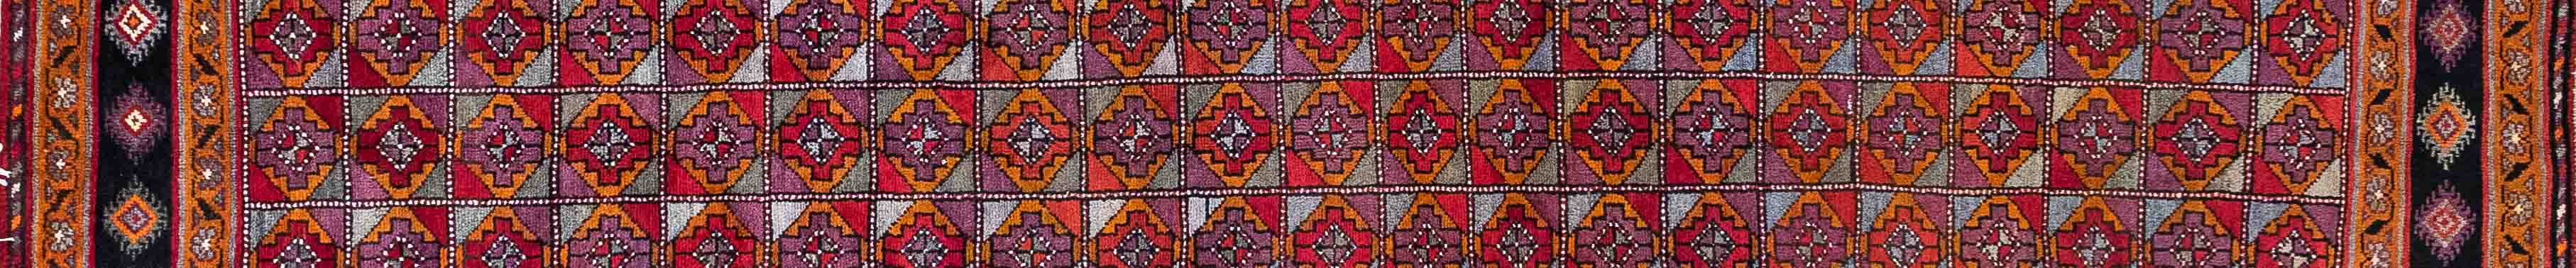 Shiraz Persian Carpet Rug N1Carpet Canada Montreal Tapis Persan 1250